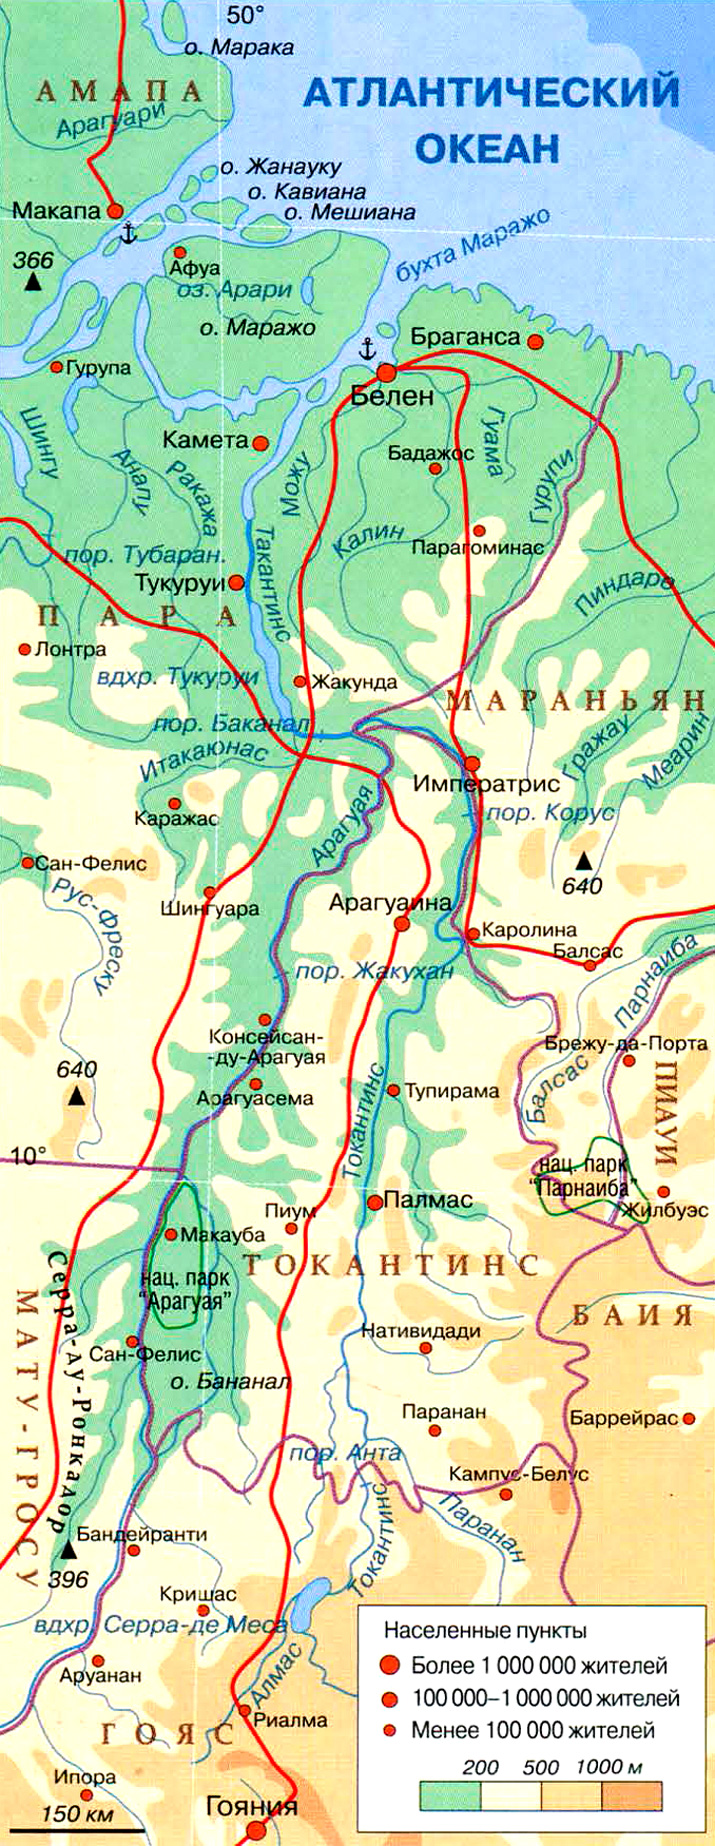 река Токантинс на карте